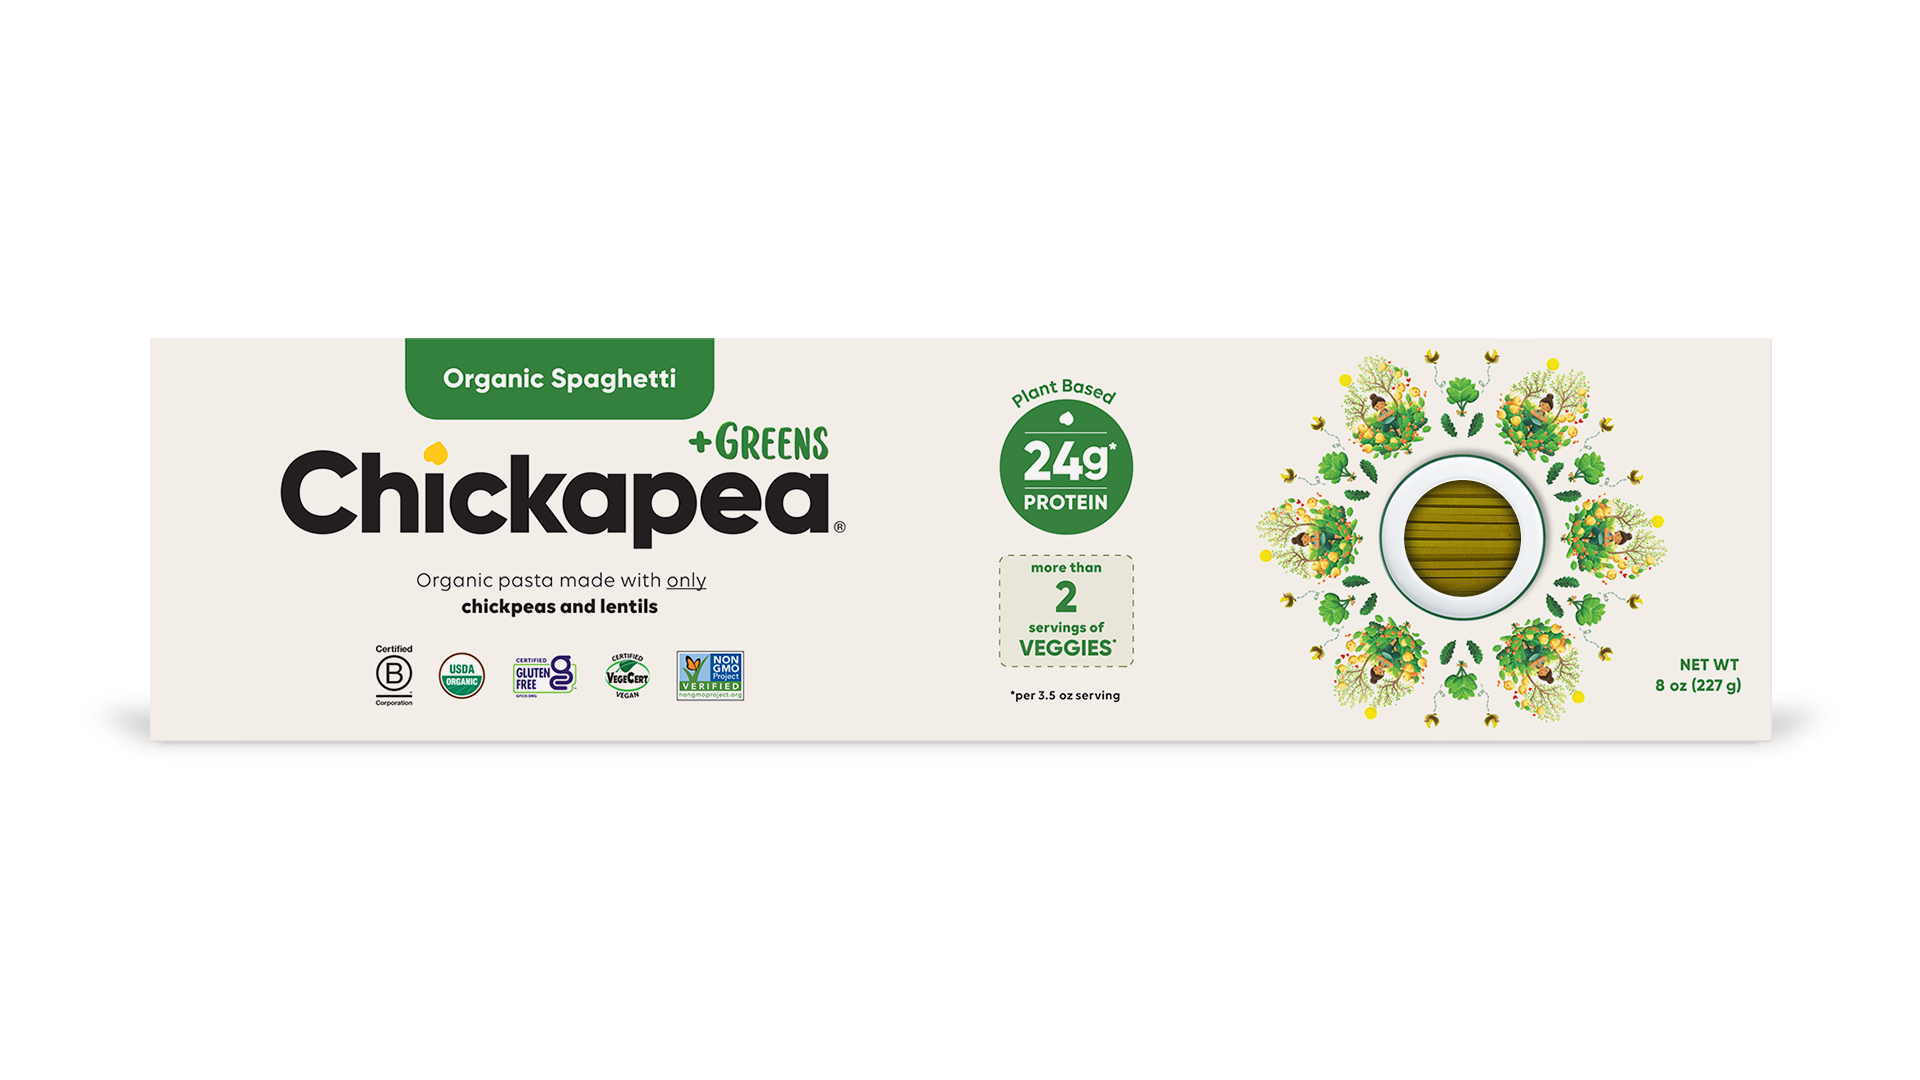 Chickapea +Greens Organic Chickpea and Lentil Pasta - Spaghetti 6 units per case 227 g